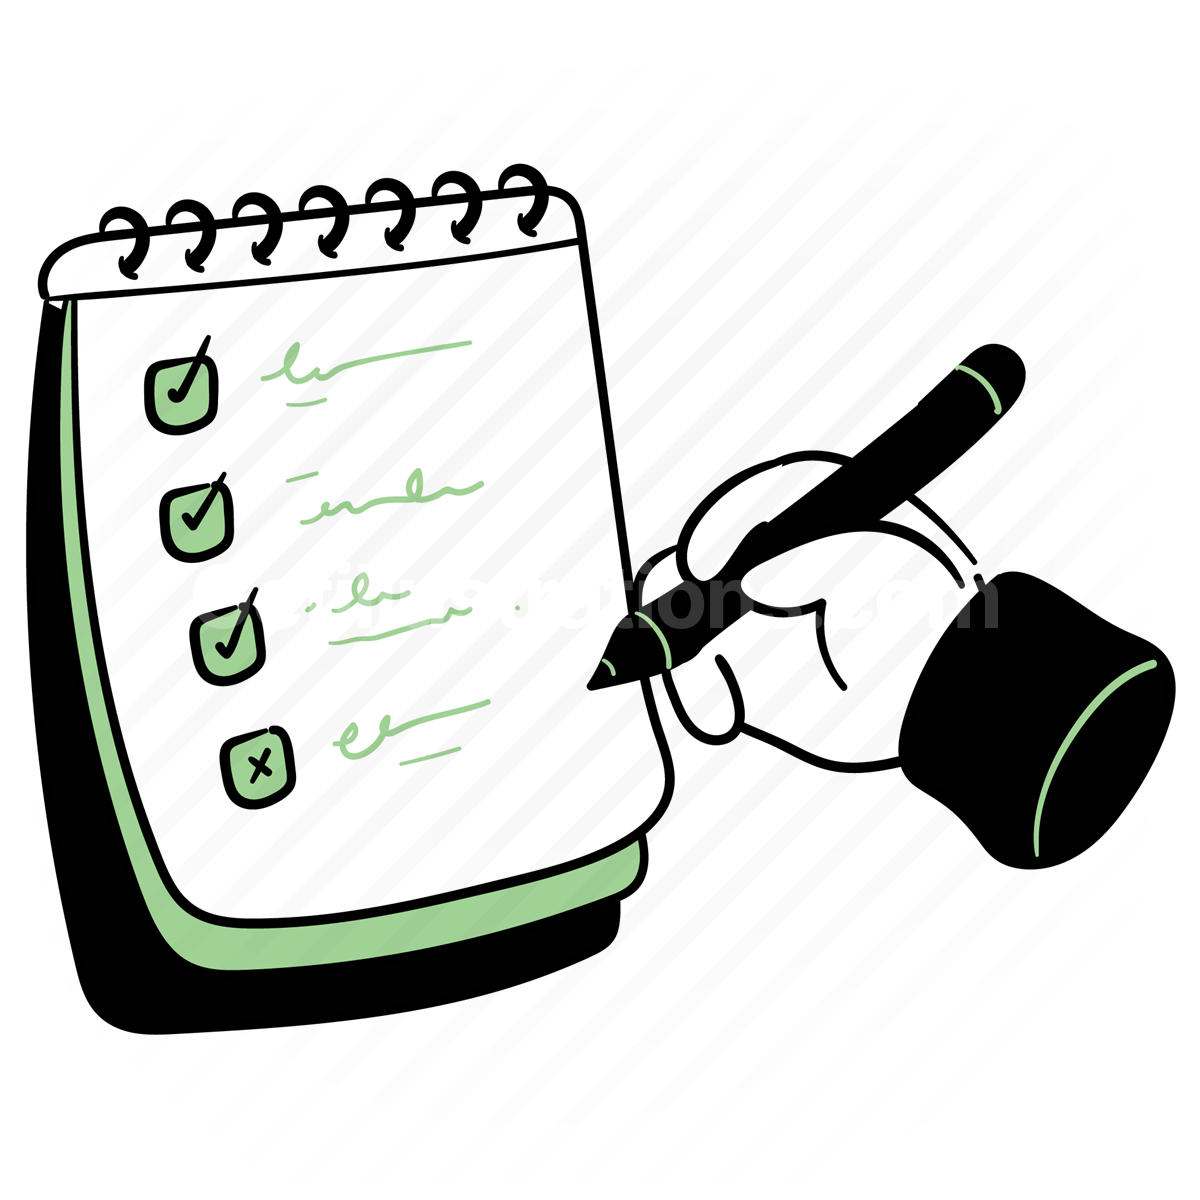 checklist, list, document, to do list, tasks, hand gesture